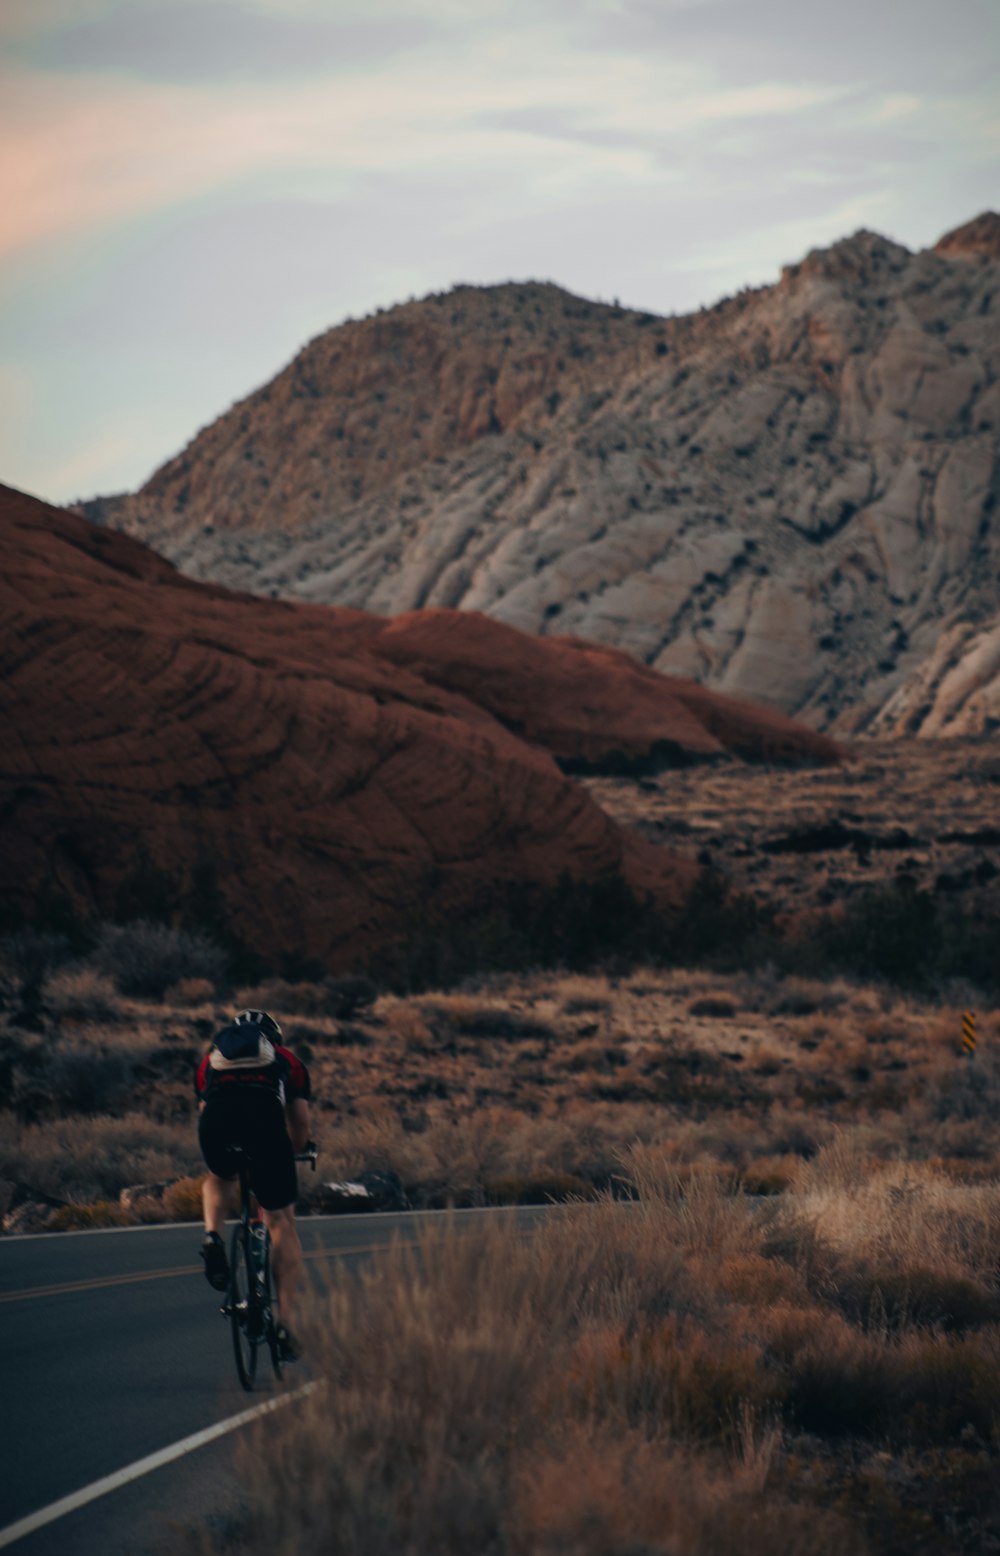 Un homme à vélo sur une route à côté d’une montagne